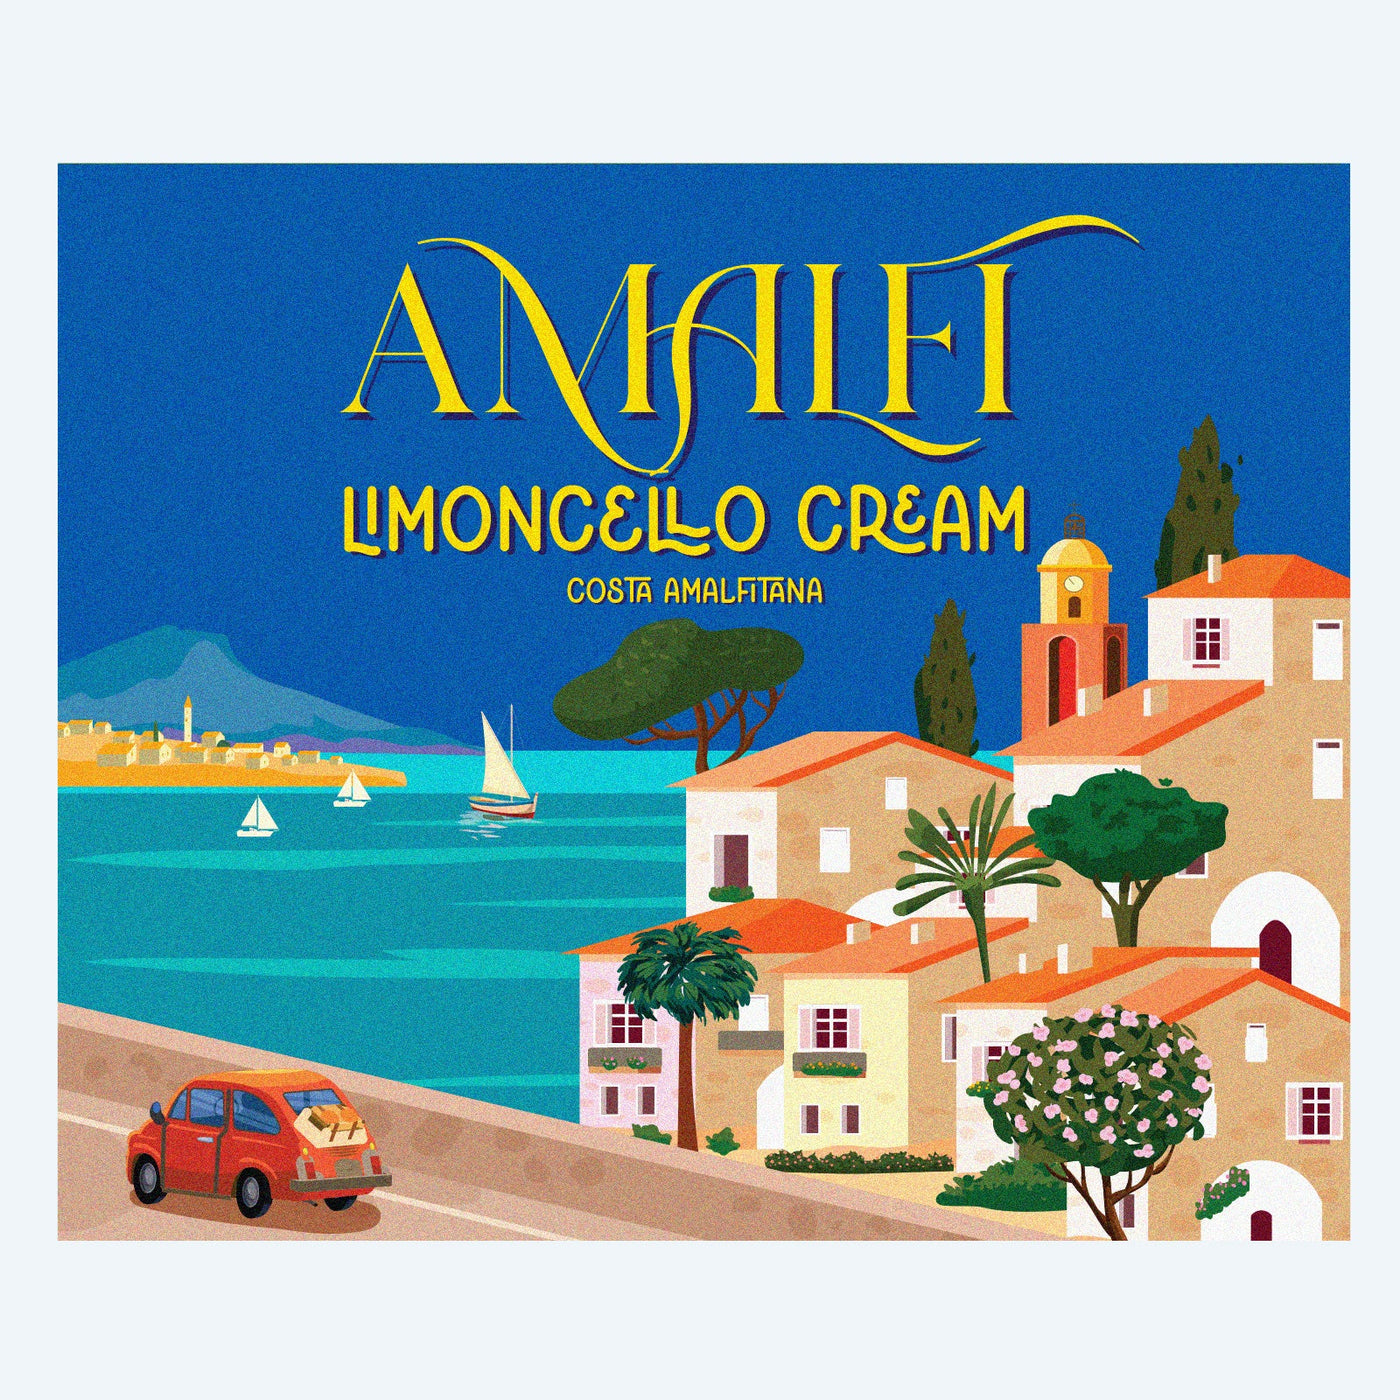 Portofino Handmade Jar Cream Limoncello: Exquisite Limoncello from Portofino